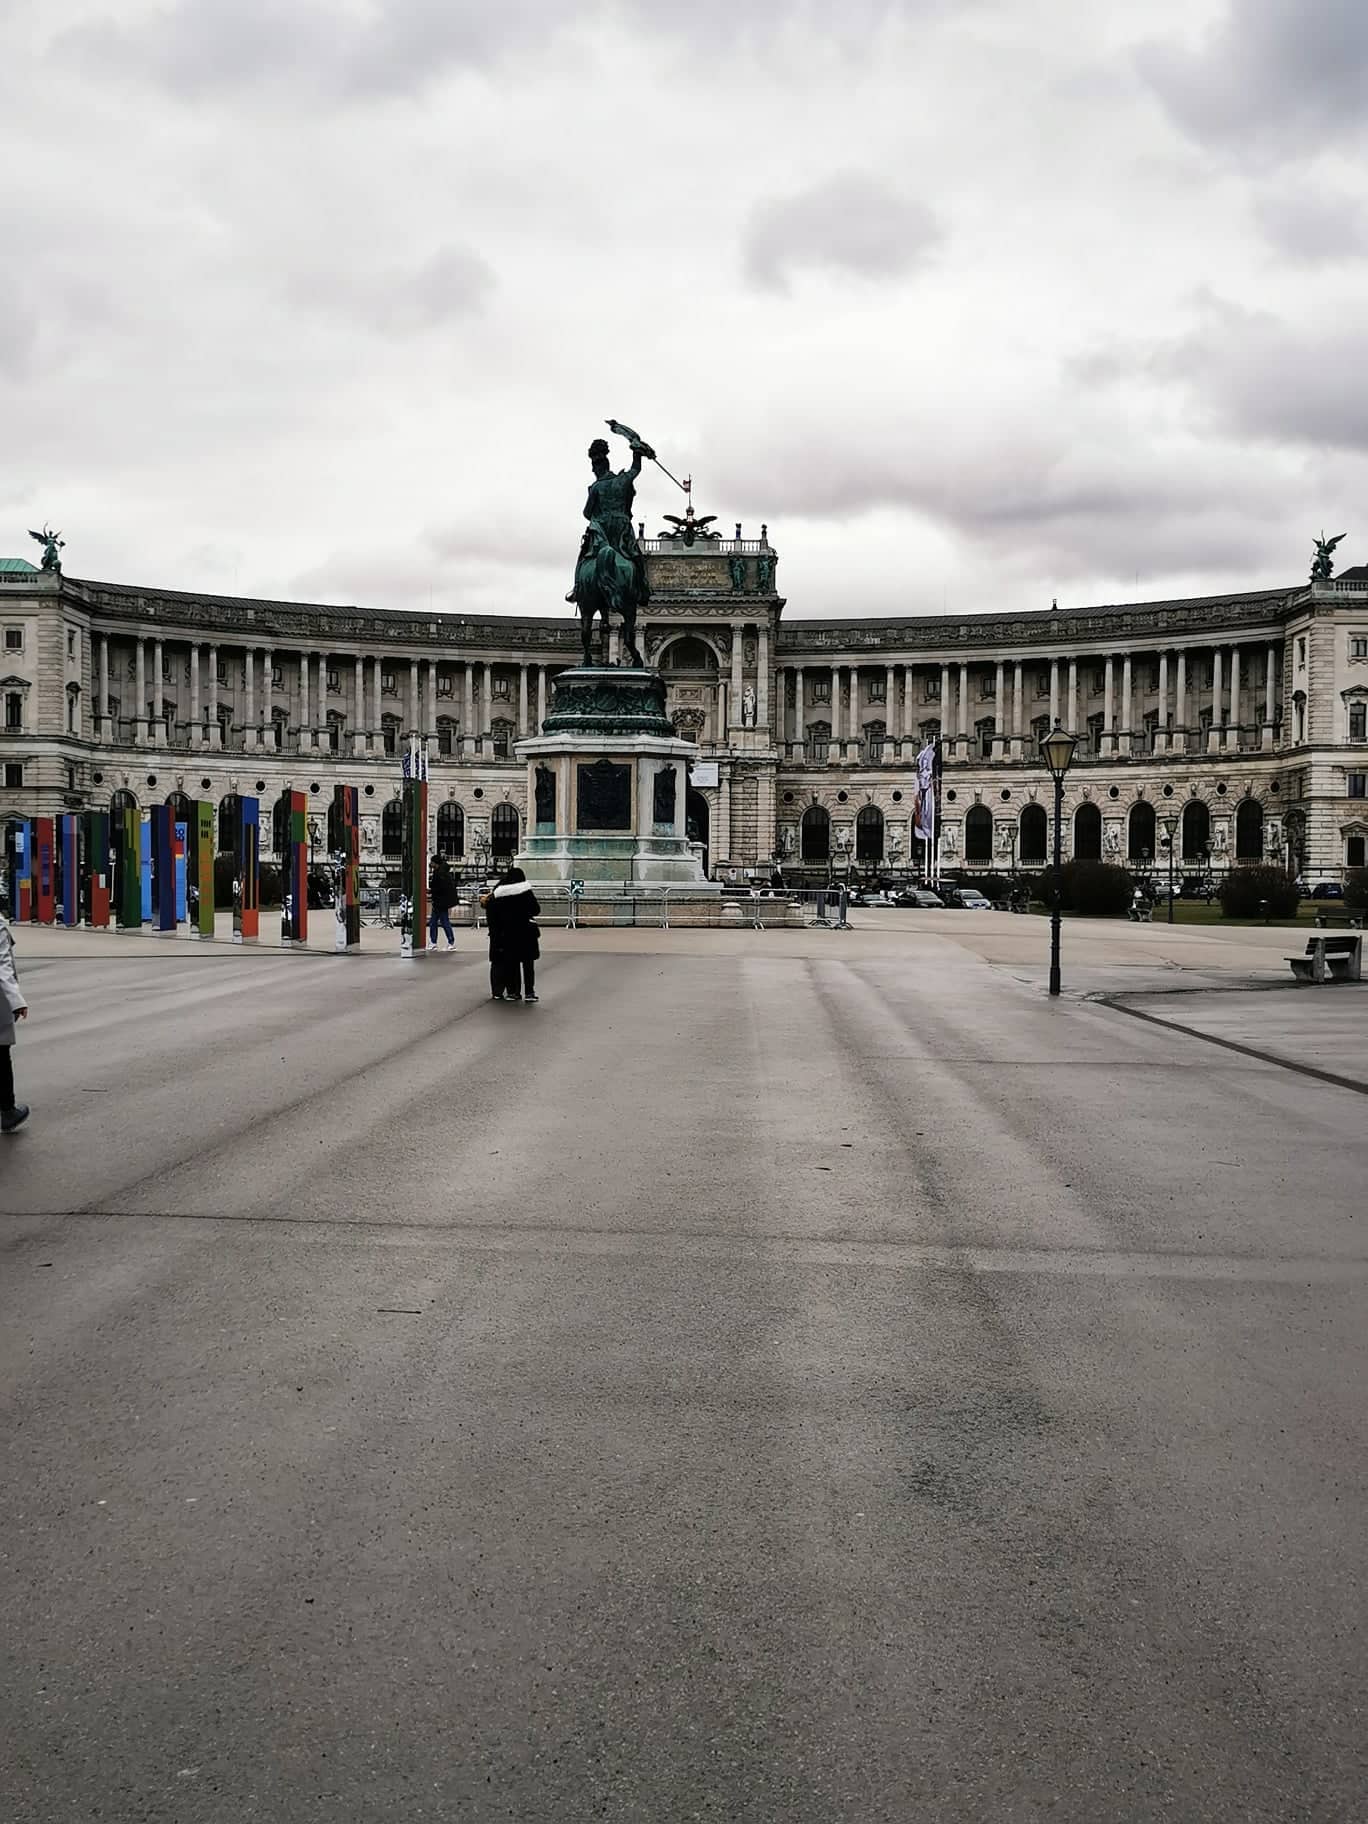 Βιέννη: Η Μικαέλα Θεοφίλου μας ταξιδεύει στη πρωτεύουσα της Αυστρίας